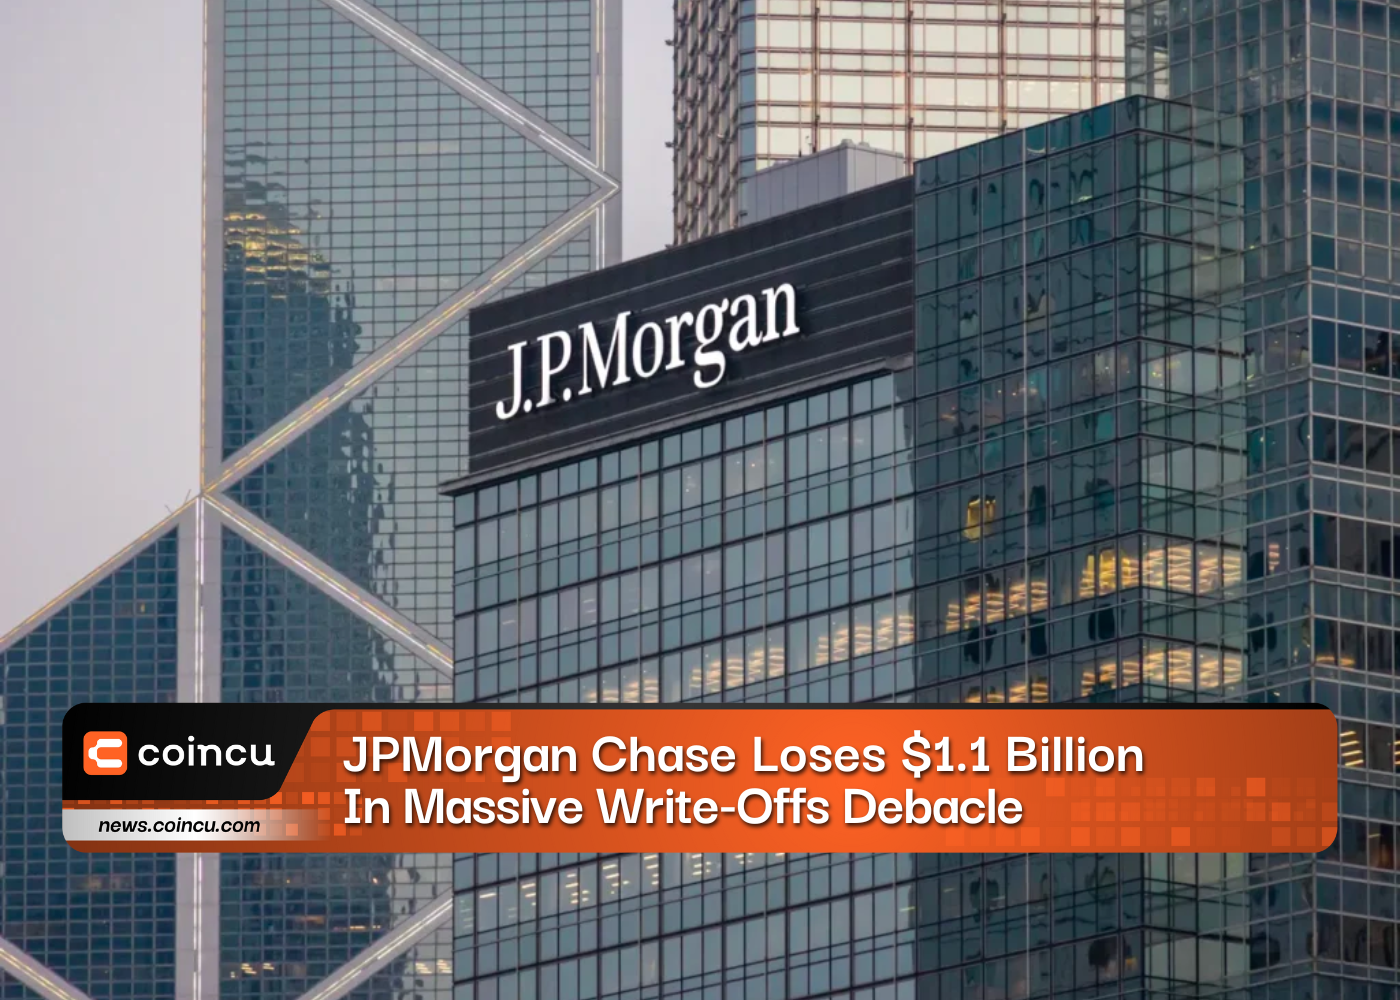 JPMorgan Chase verliert 1.1 Milliarden